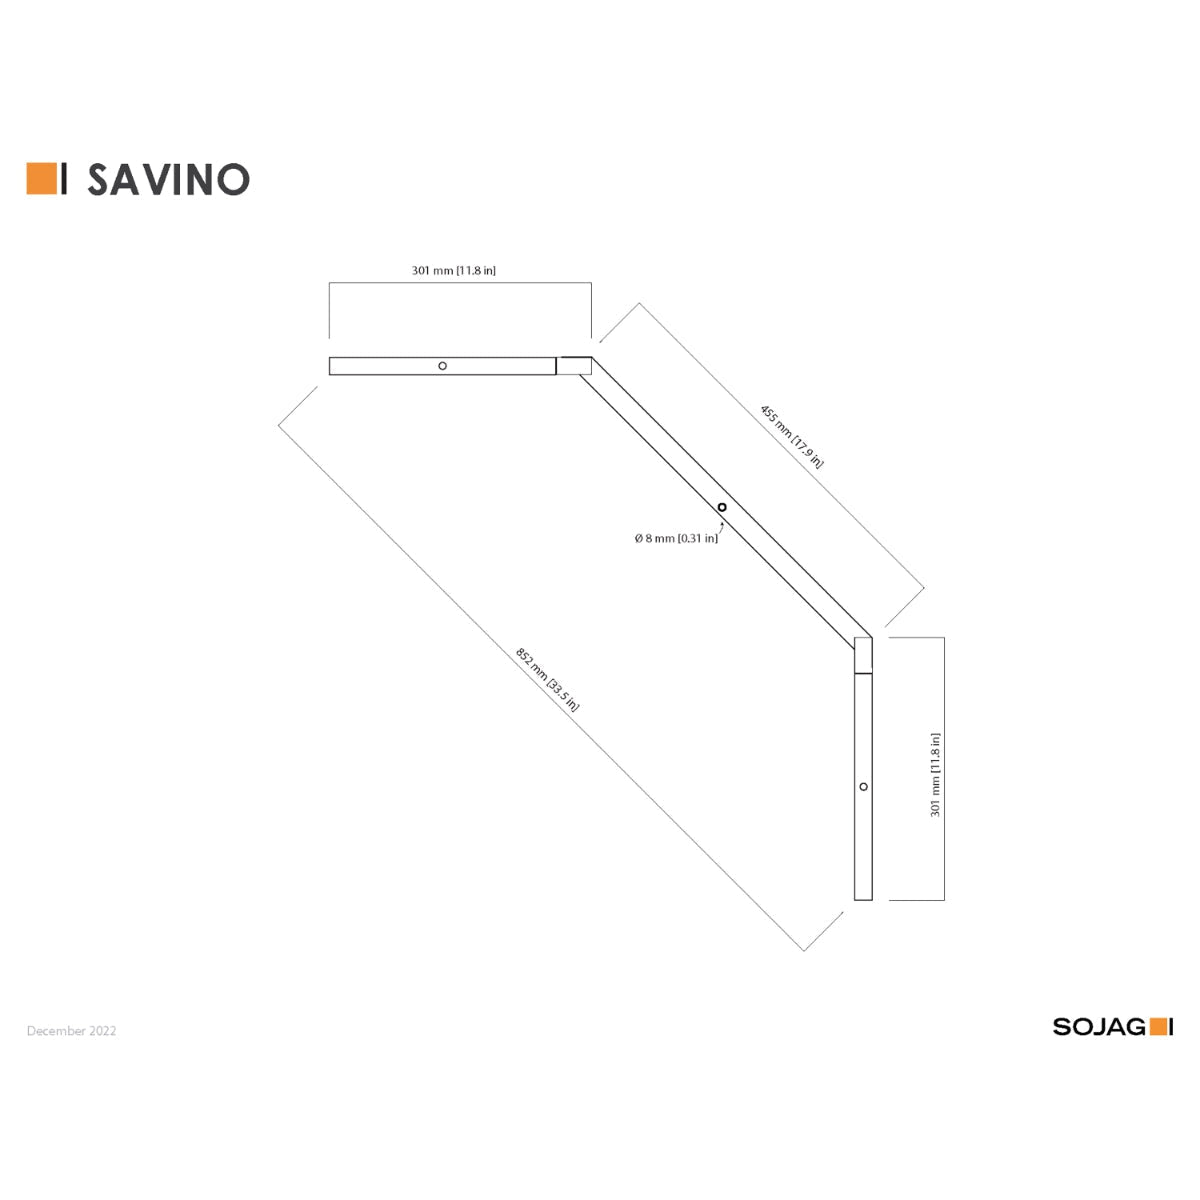 Savino Aluminum Gazebo 12 x 14 ft | Sojag-Delightful Yard